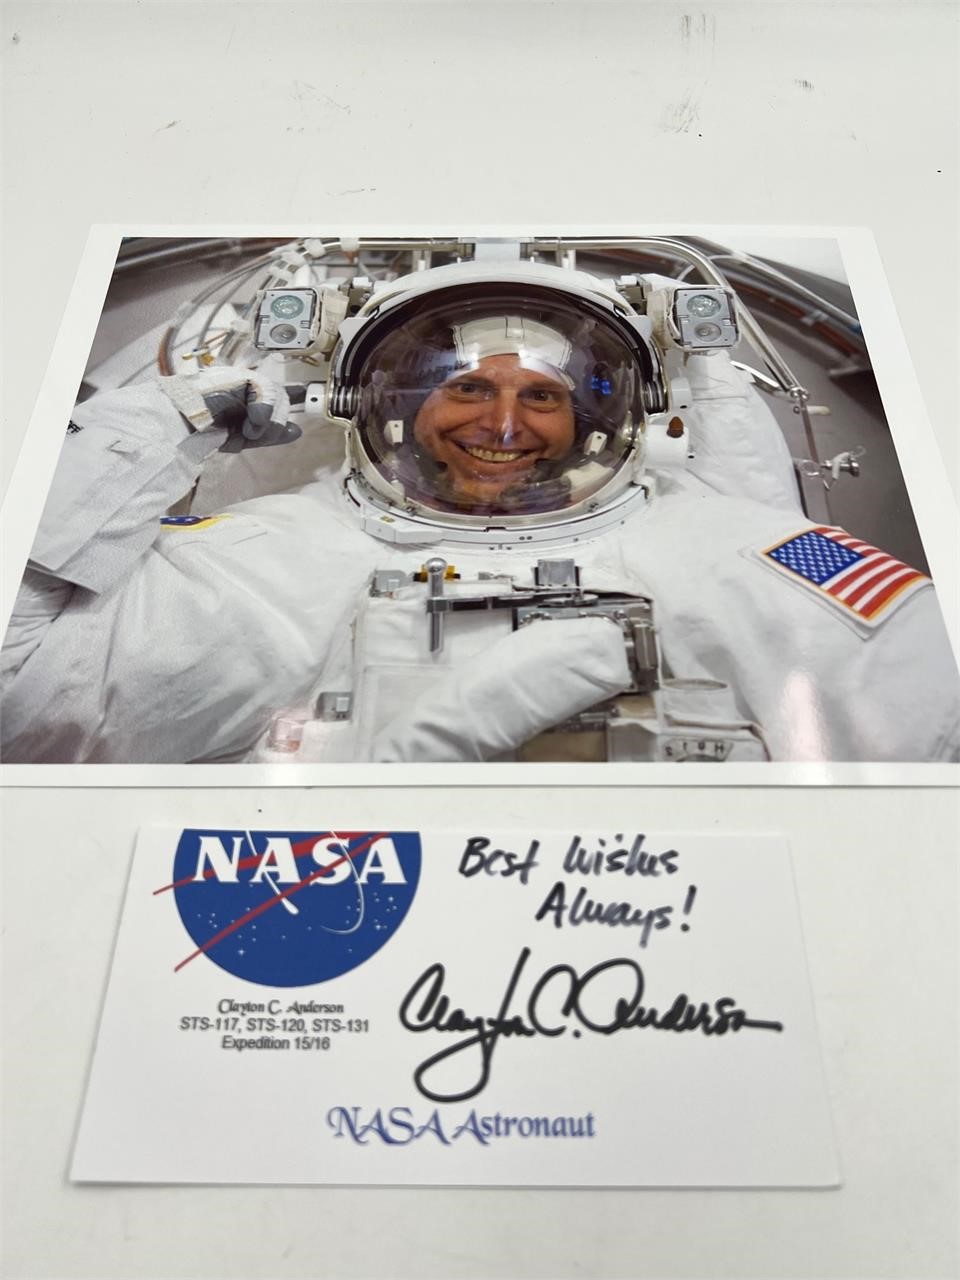 NASA astronaut autograph- Clayton Anderson